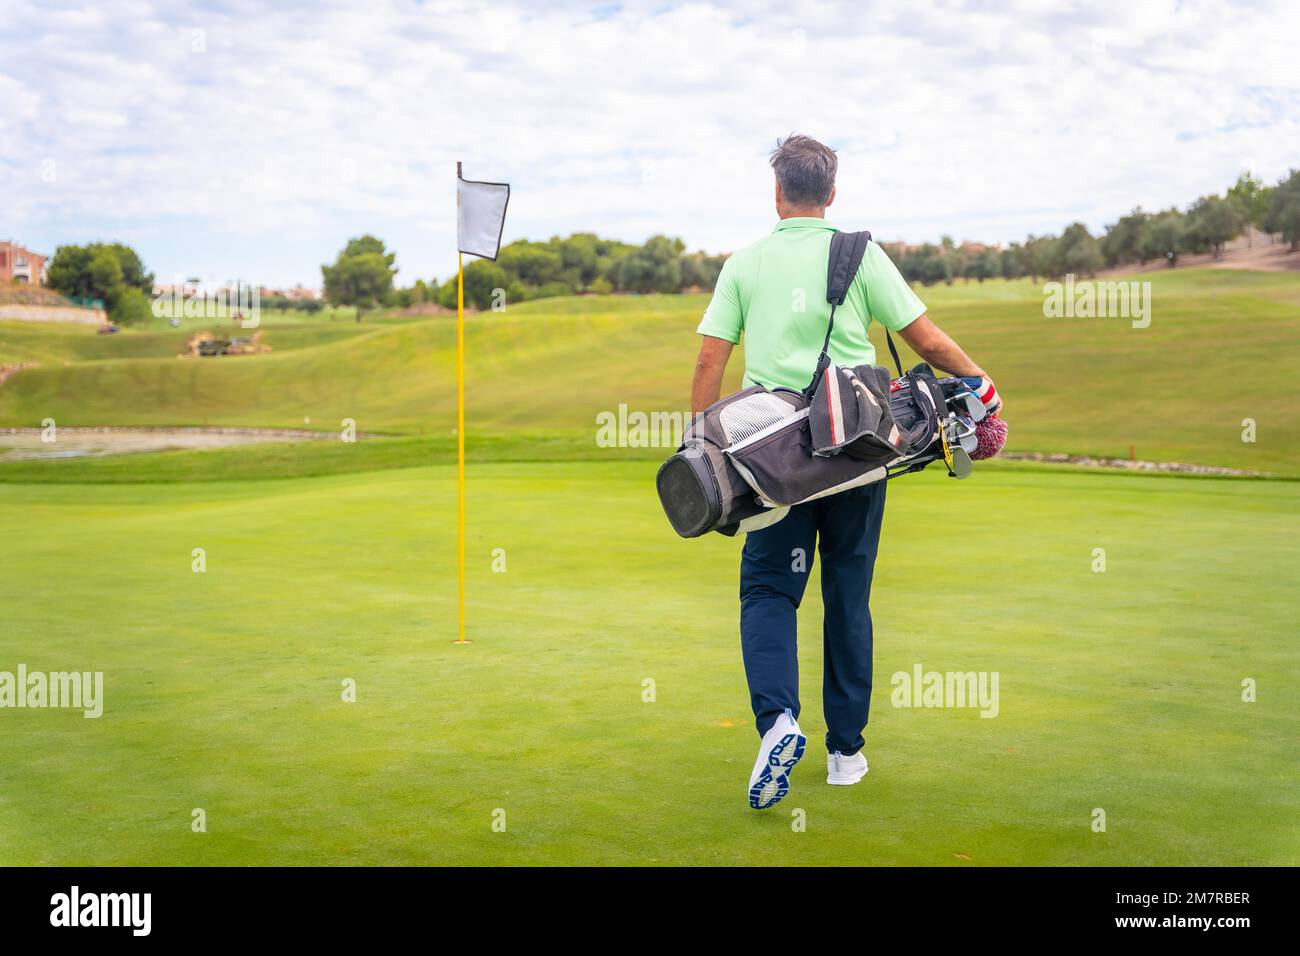 Ritratto del golfer maschio che cammina giù le borse di trasporto del fairway, giocare il golf Foto Stock